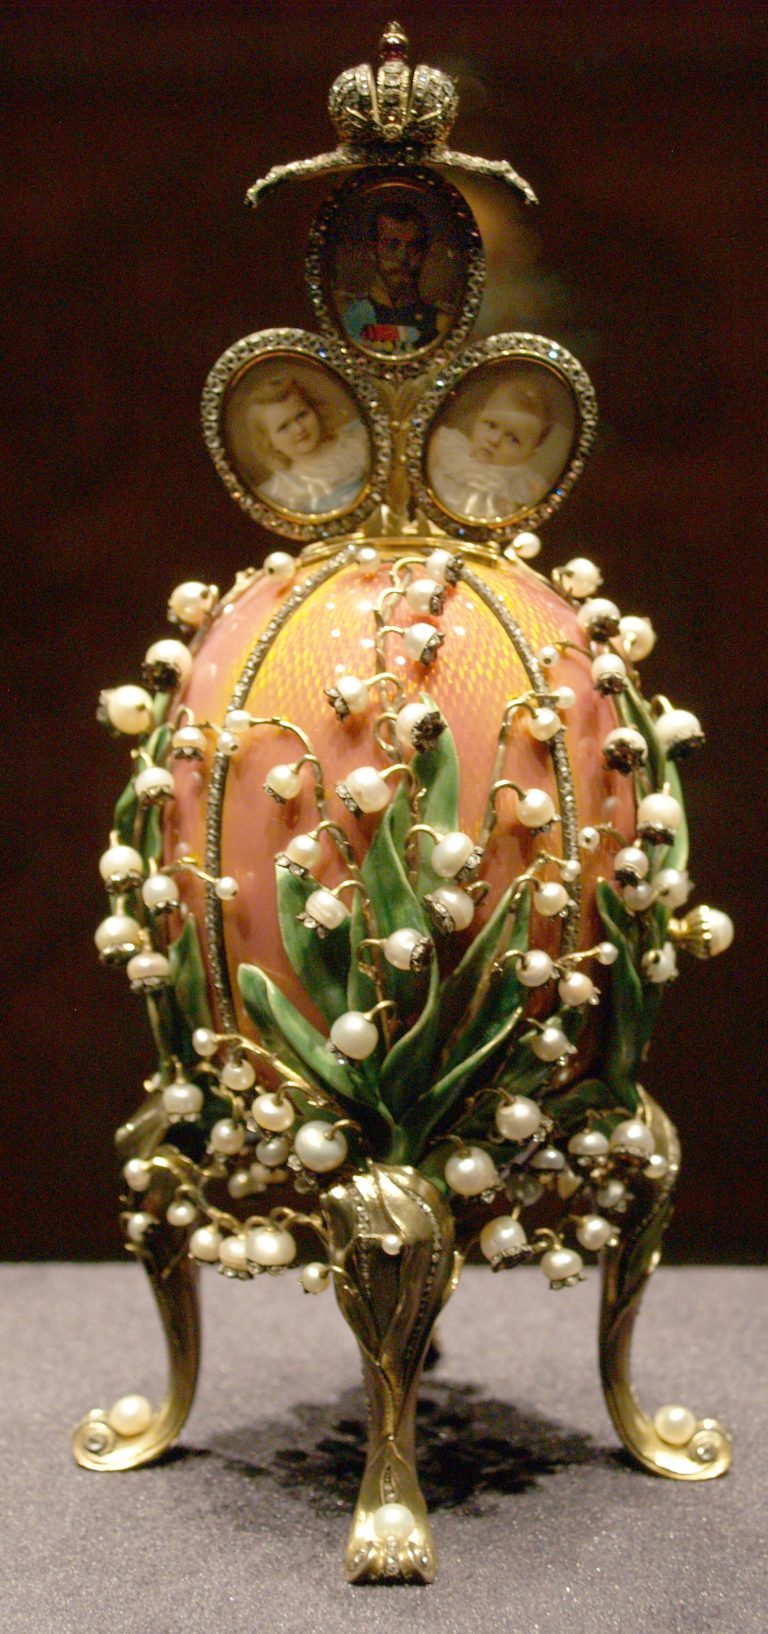 Fabergého vejce se stala synonymem nádhery a bohatství předrevolučního Ruska.